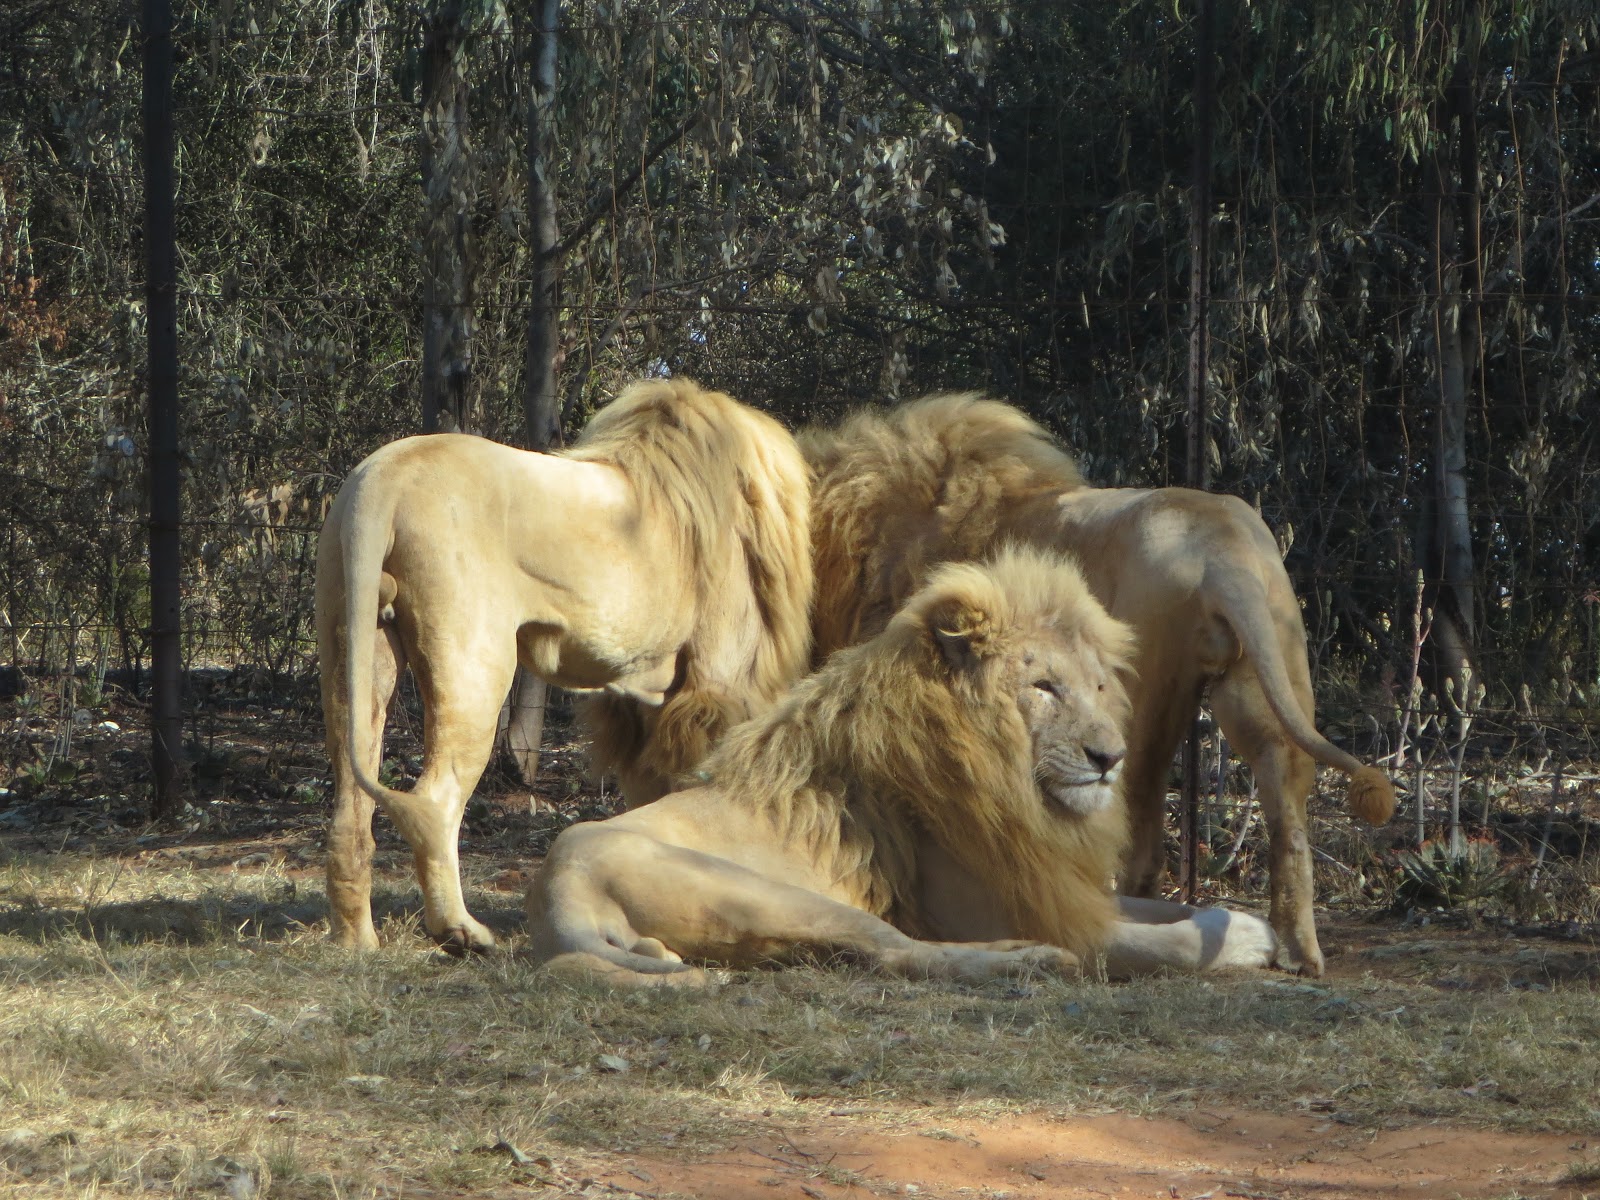 safari zuid afrika johannesburg